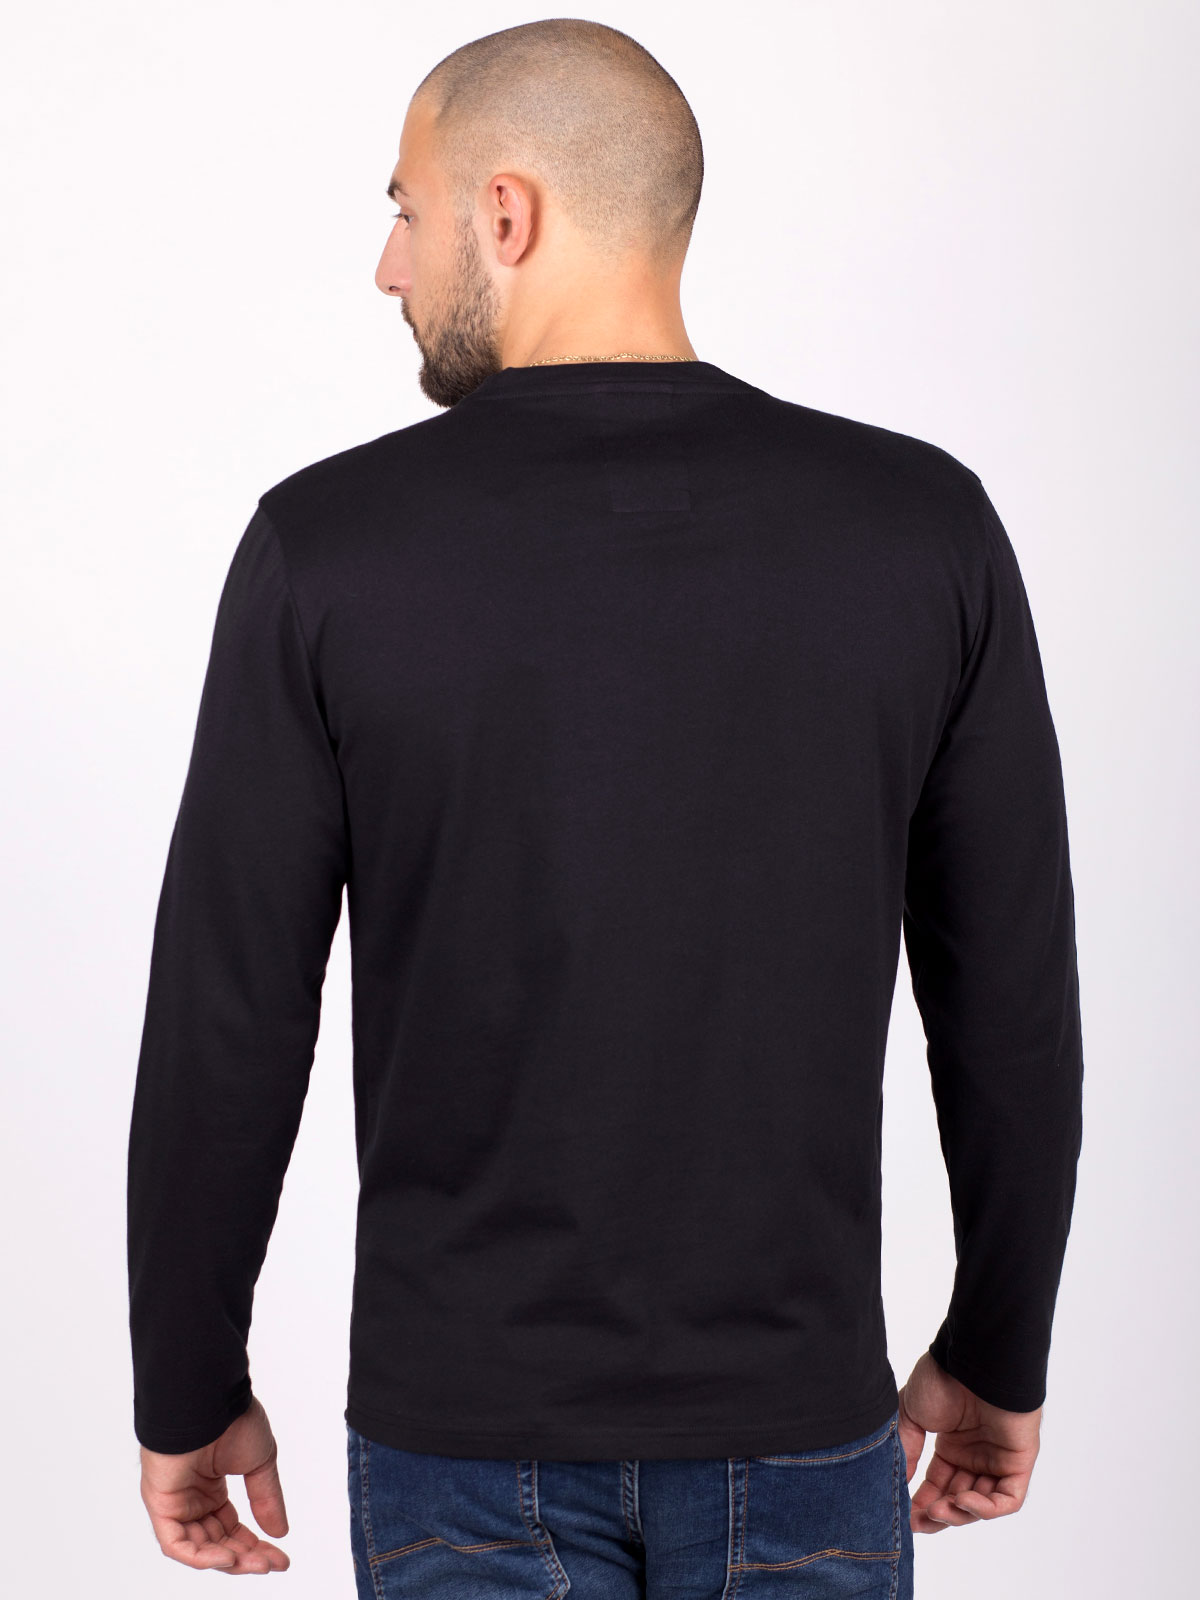 Μαύρη μπλούζα με τρίχρωμη στάμπα - 42341 € 10.69 img4